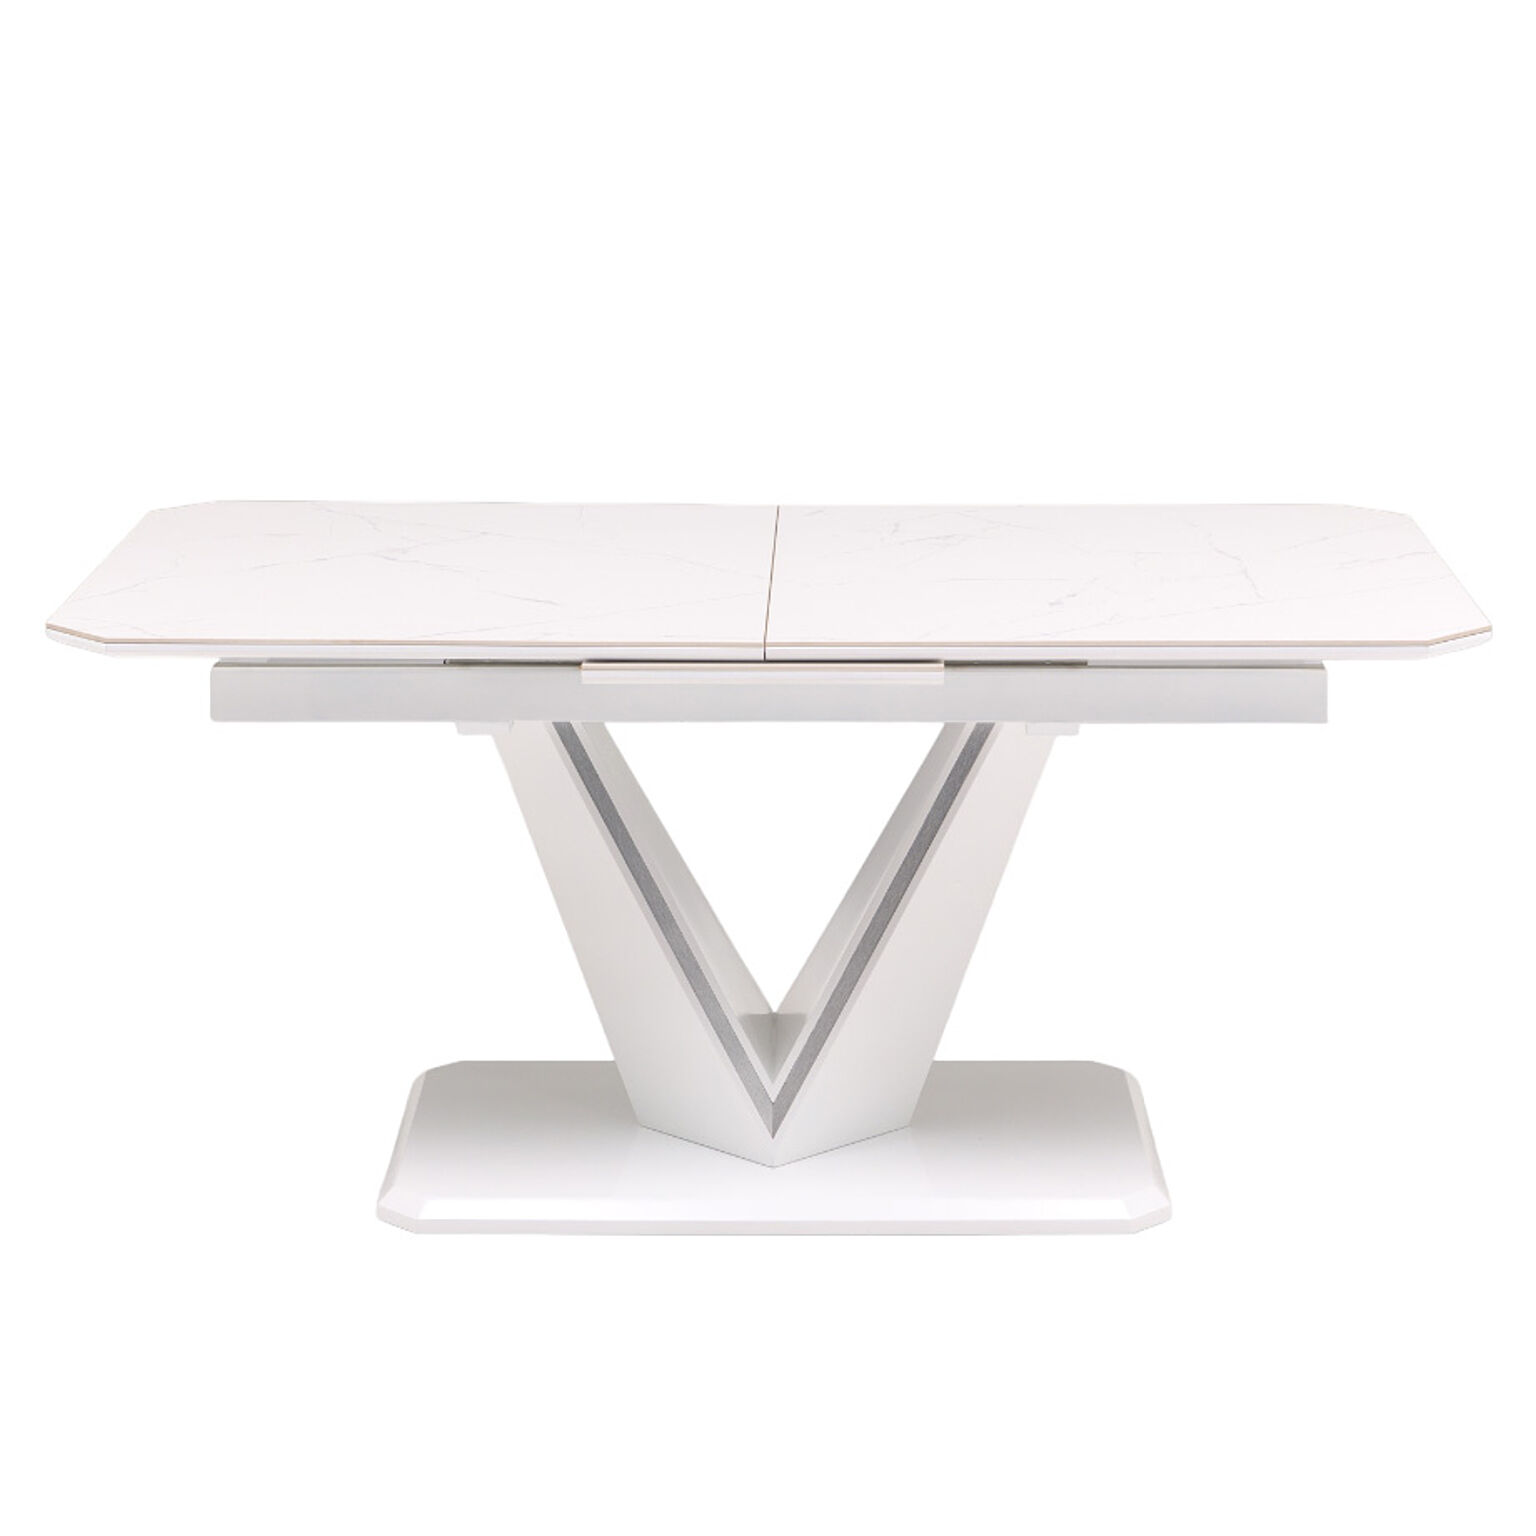 伸長式テーブル 伸長式ダイニングテーブル セラミック ダイニングテーブル 幅160-200 北欧 おしゃれ シンプル モダン 大理石調 石目 食卓テーブル ガイア